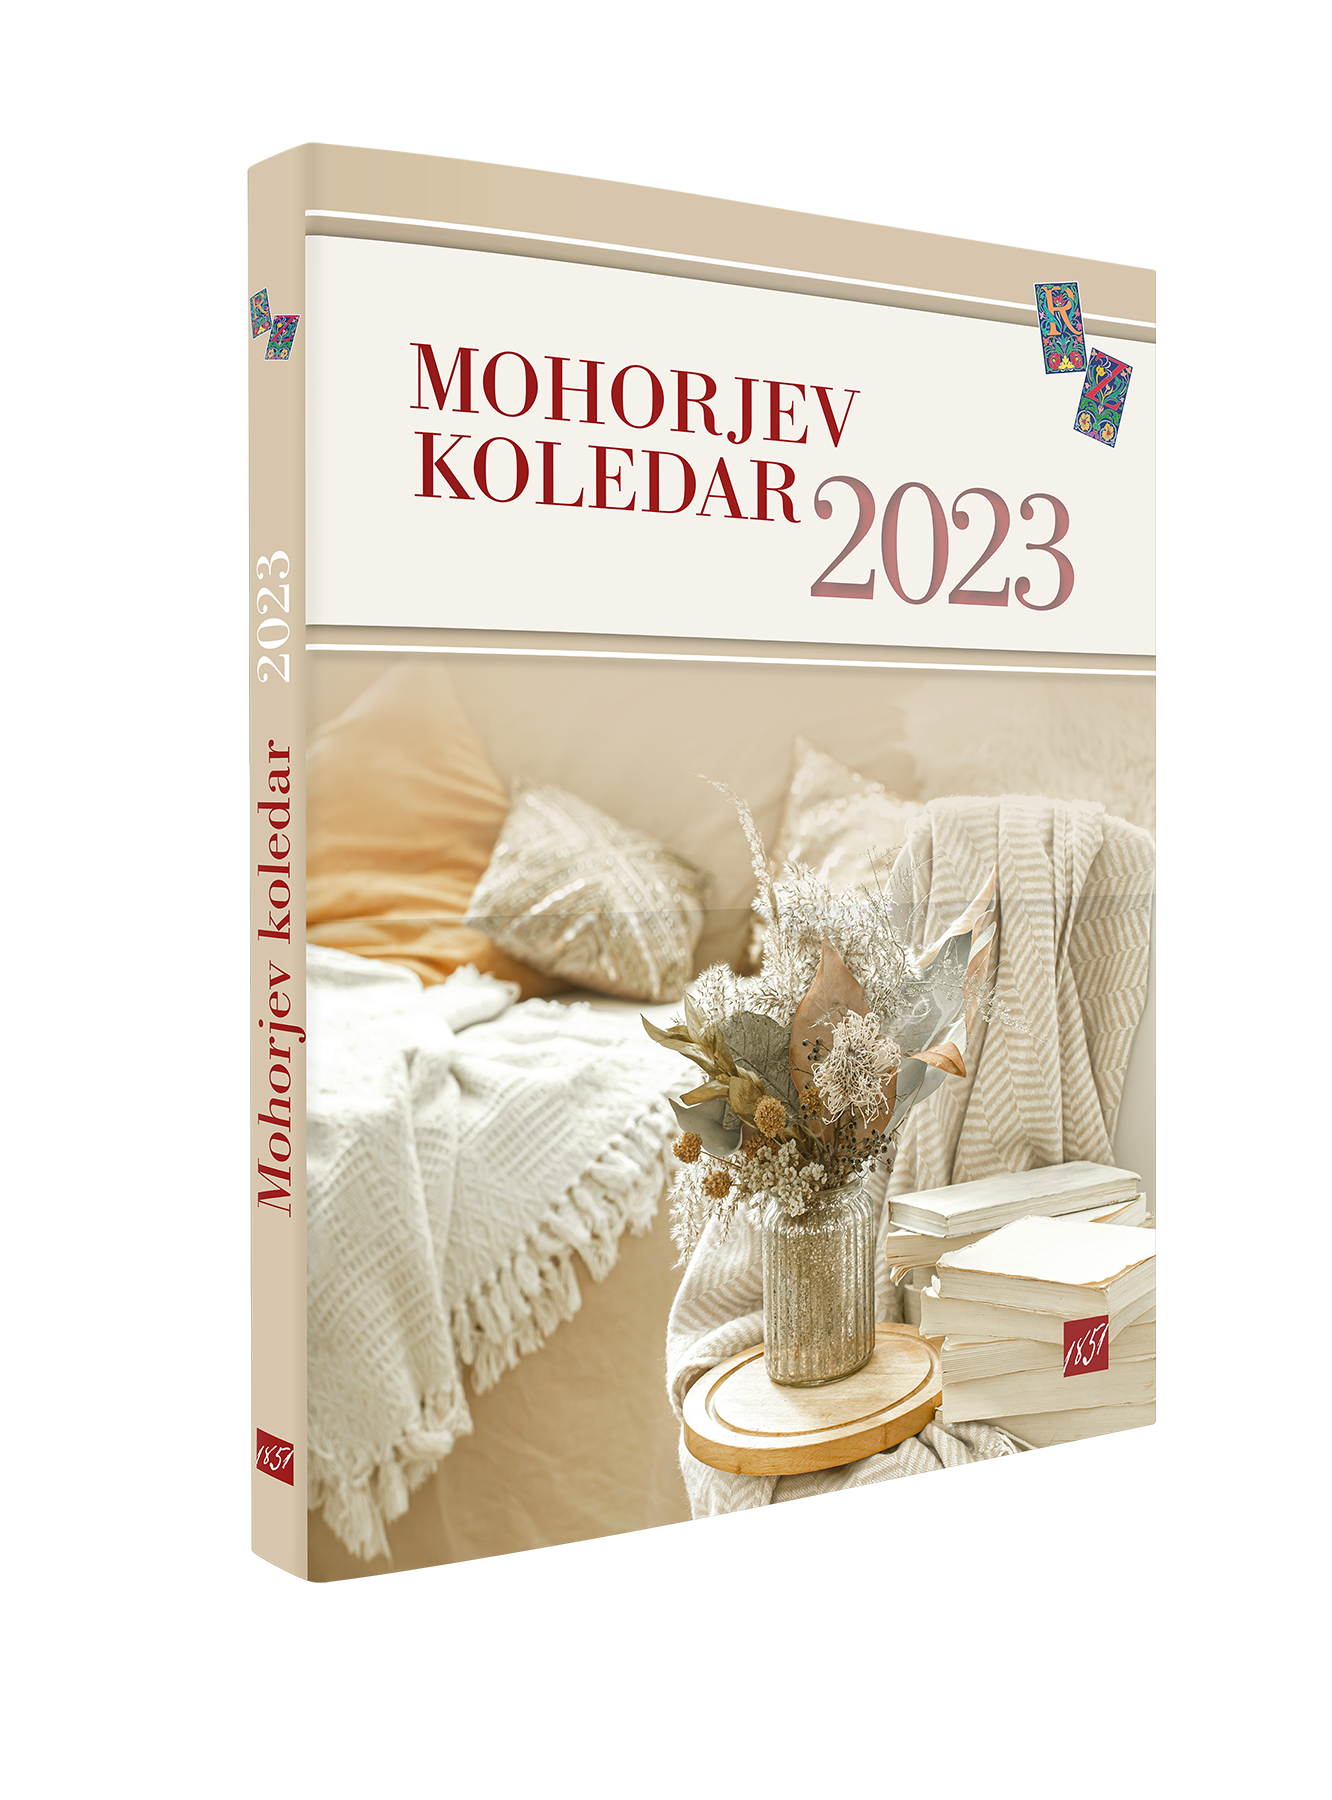 MOHORJEV KOLEDAR 2023